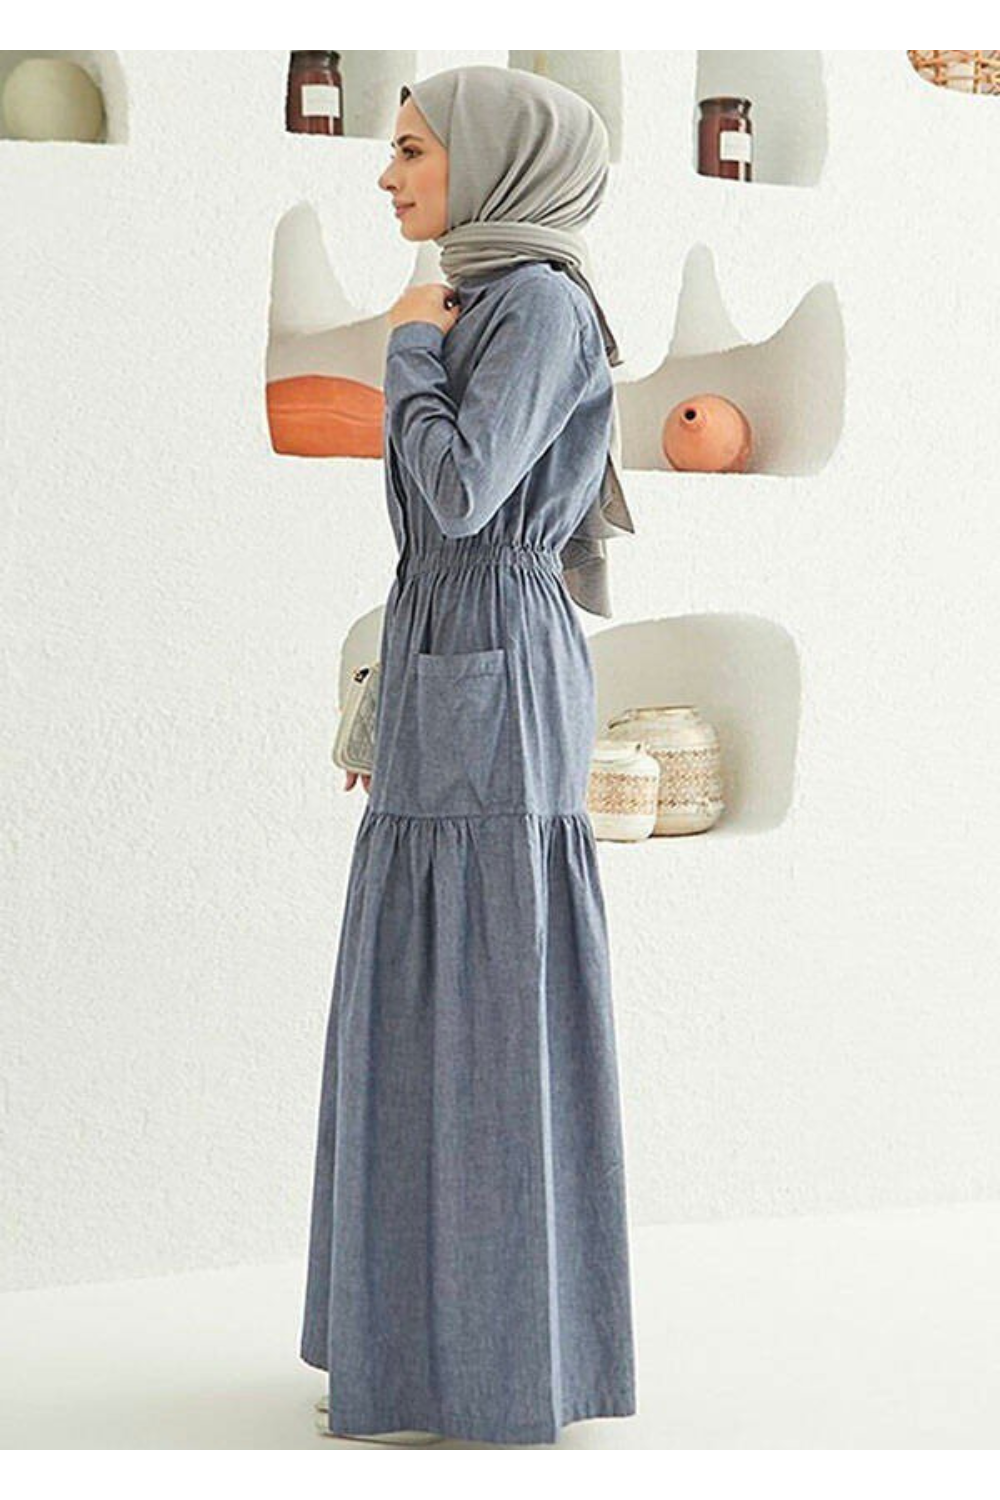 Muslim Women's Long Sleeve Maxi Dress with Tiered Skirt - Modest Design Maxi Dress By Baano 42 Gray Denim 